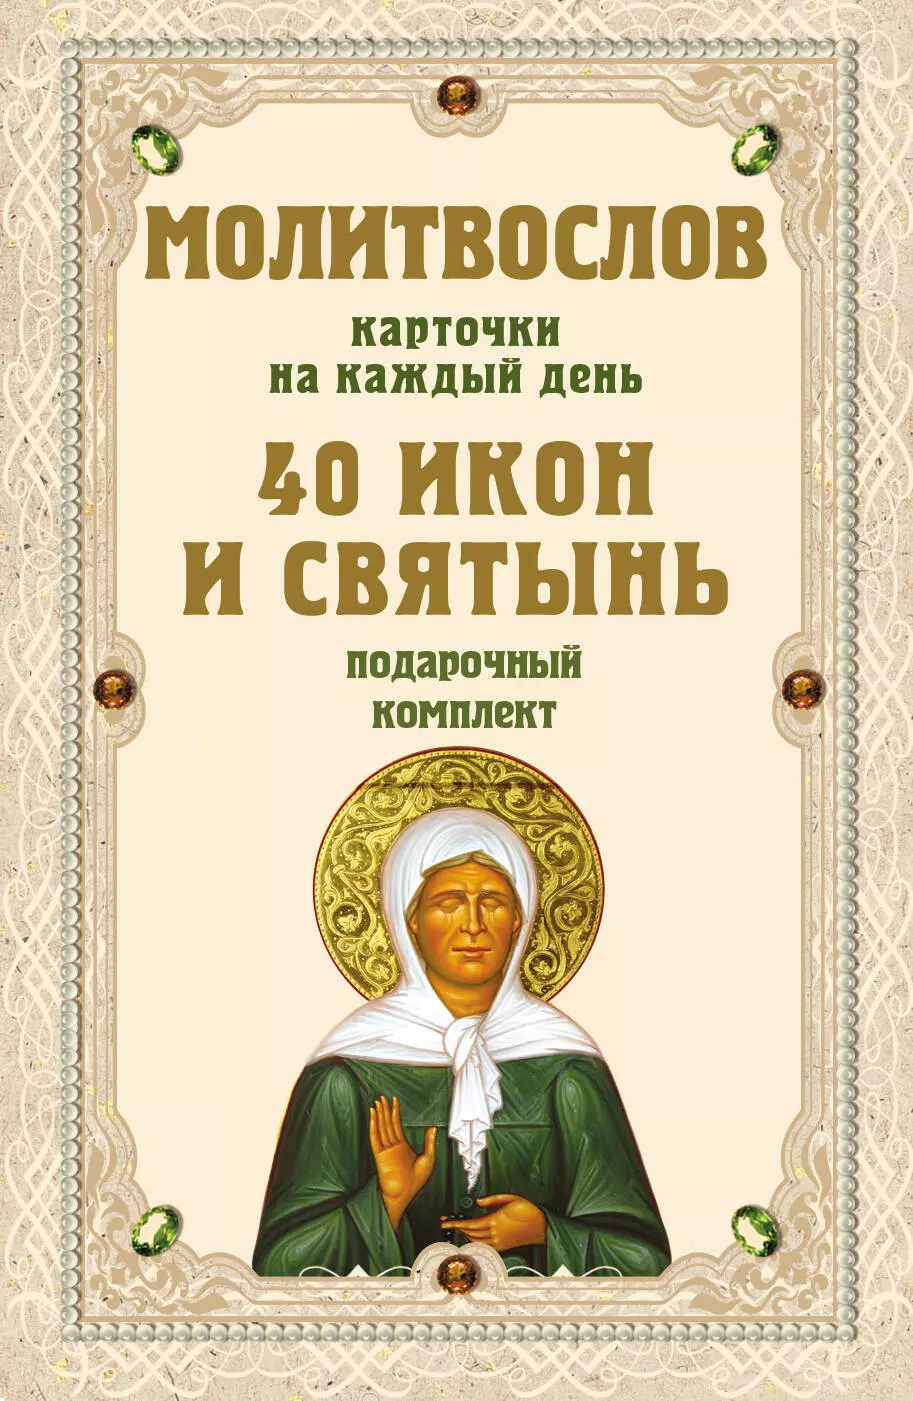 Молитвослов на каждый день. 40 икон и святынь молитвослов православный на каждый день и час